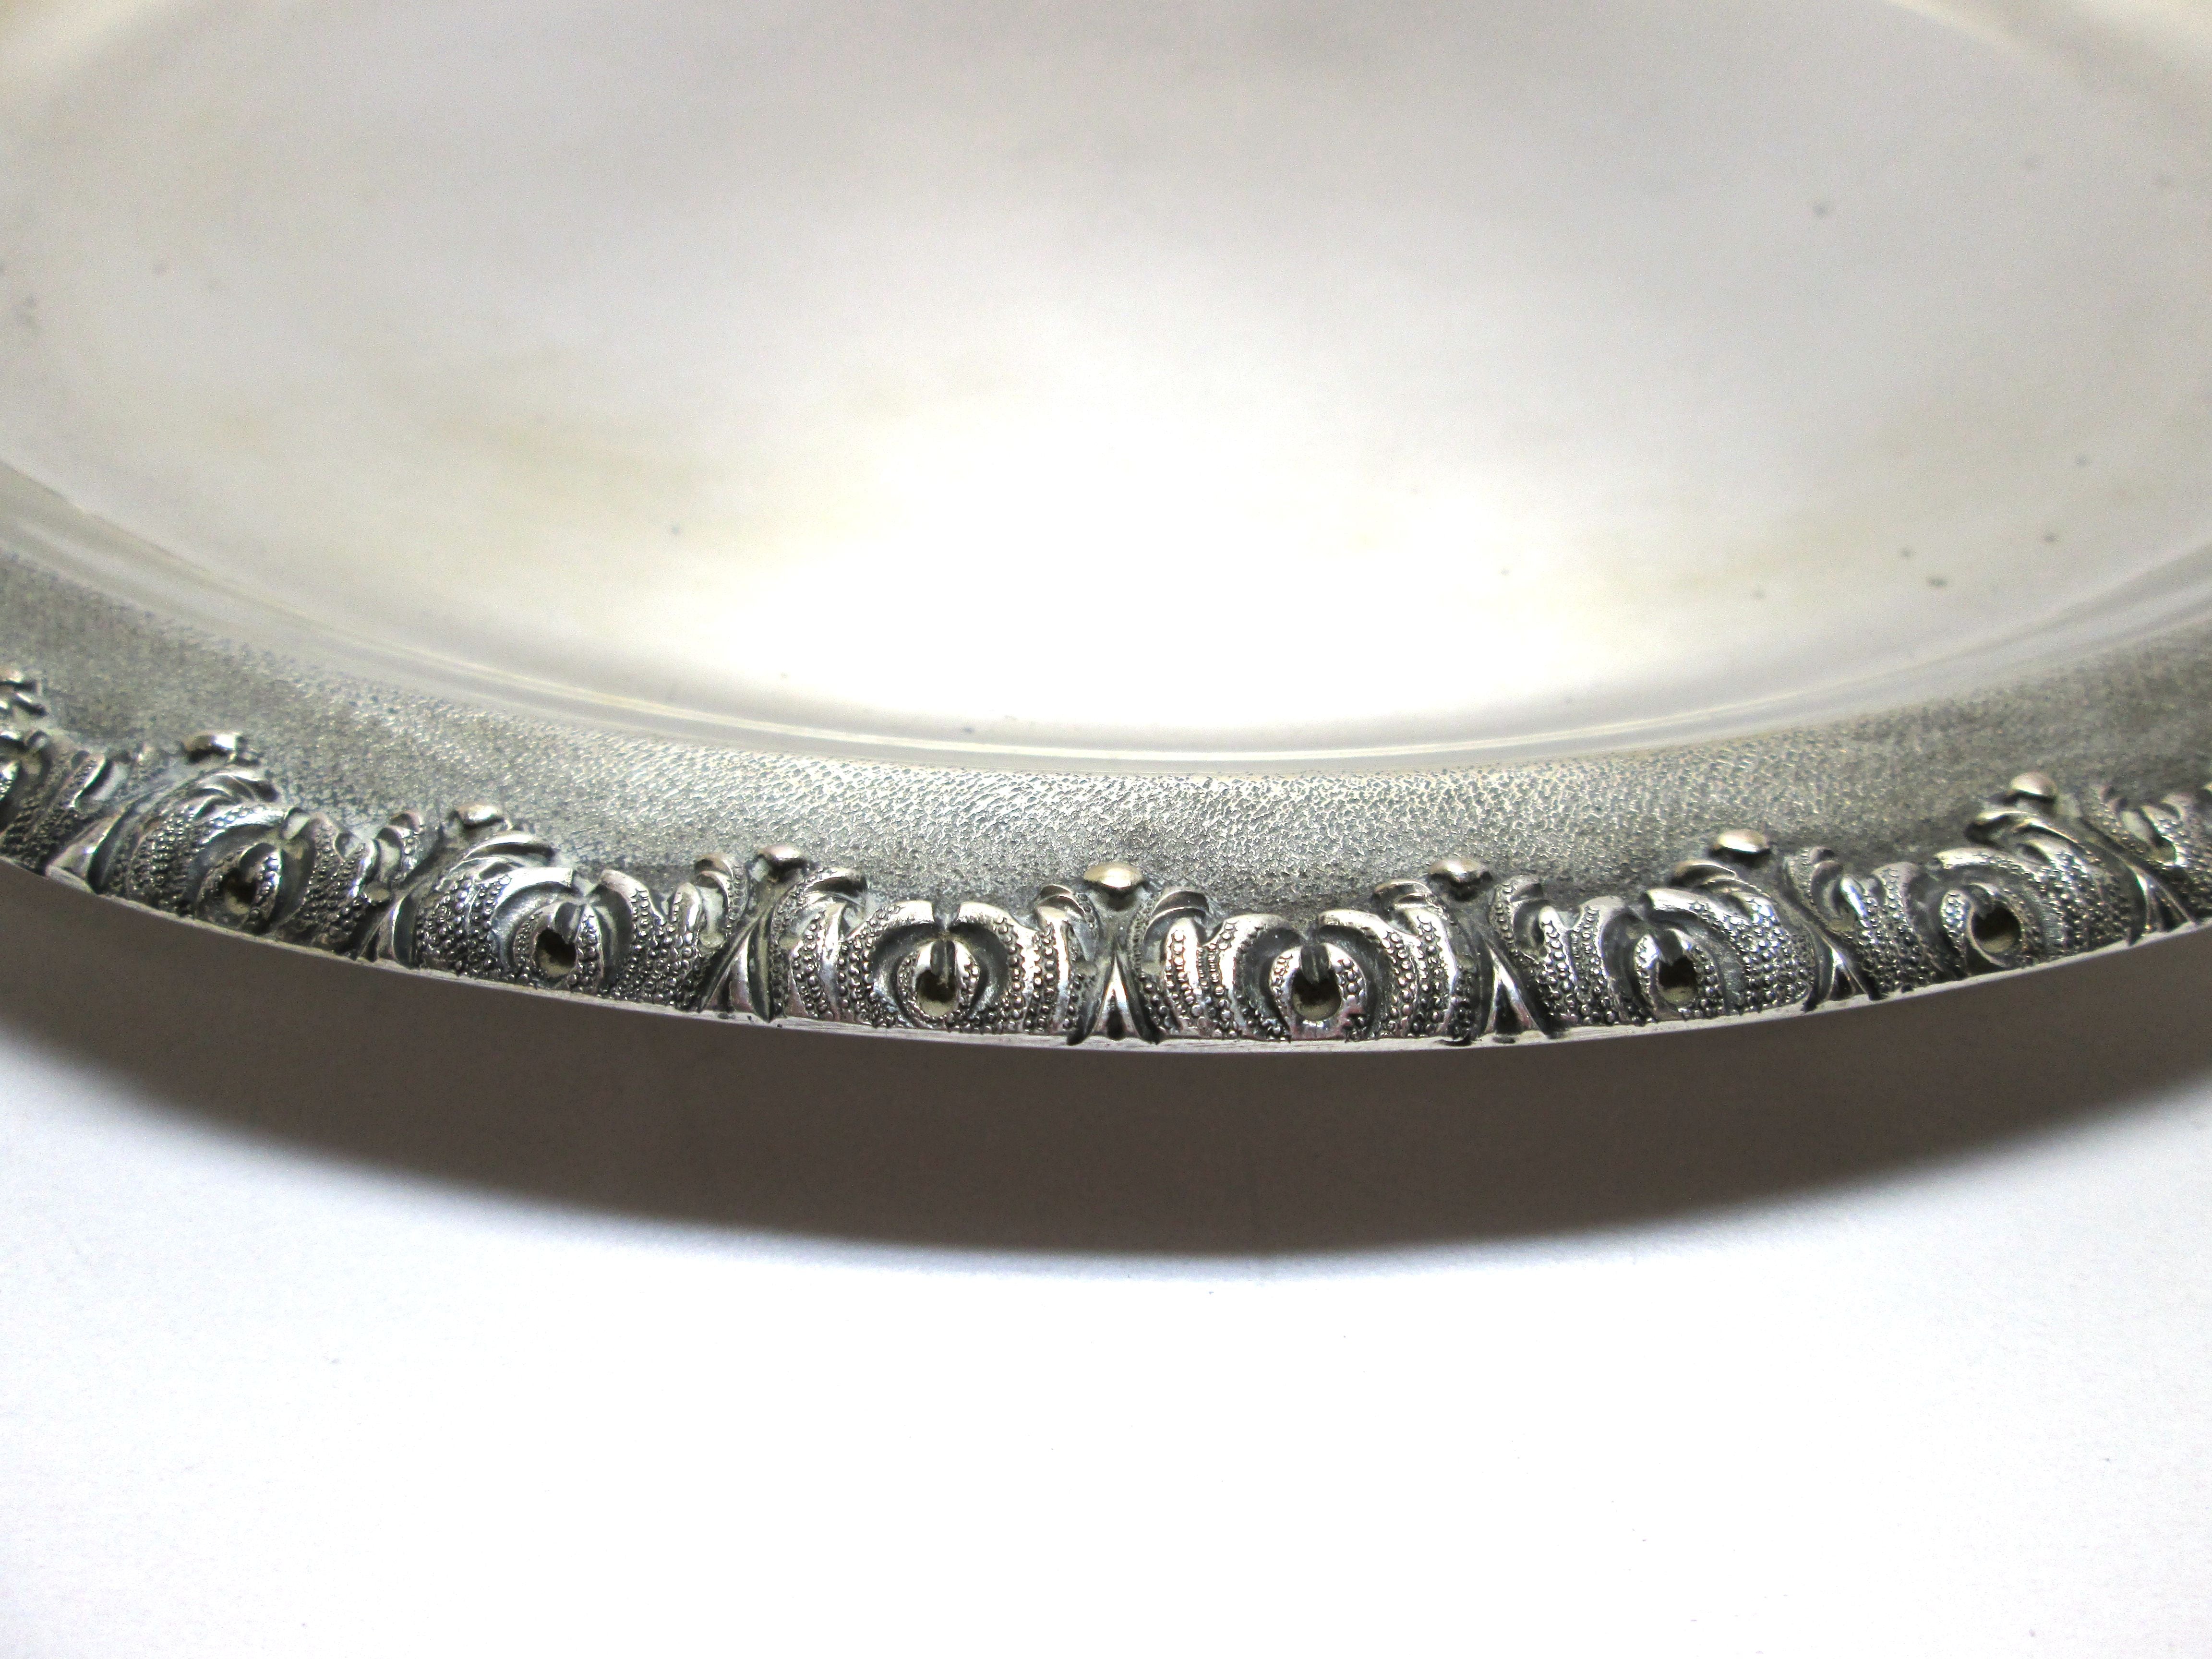  Vassoio usato, in argento 800 , in stile Gianmaria Buccellati, liscio all'interno e lavorato all'esterno usato